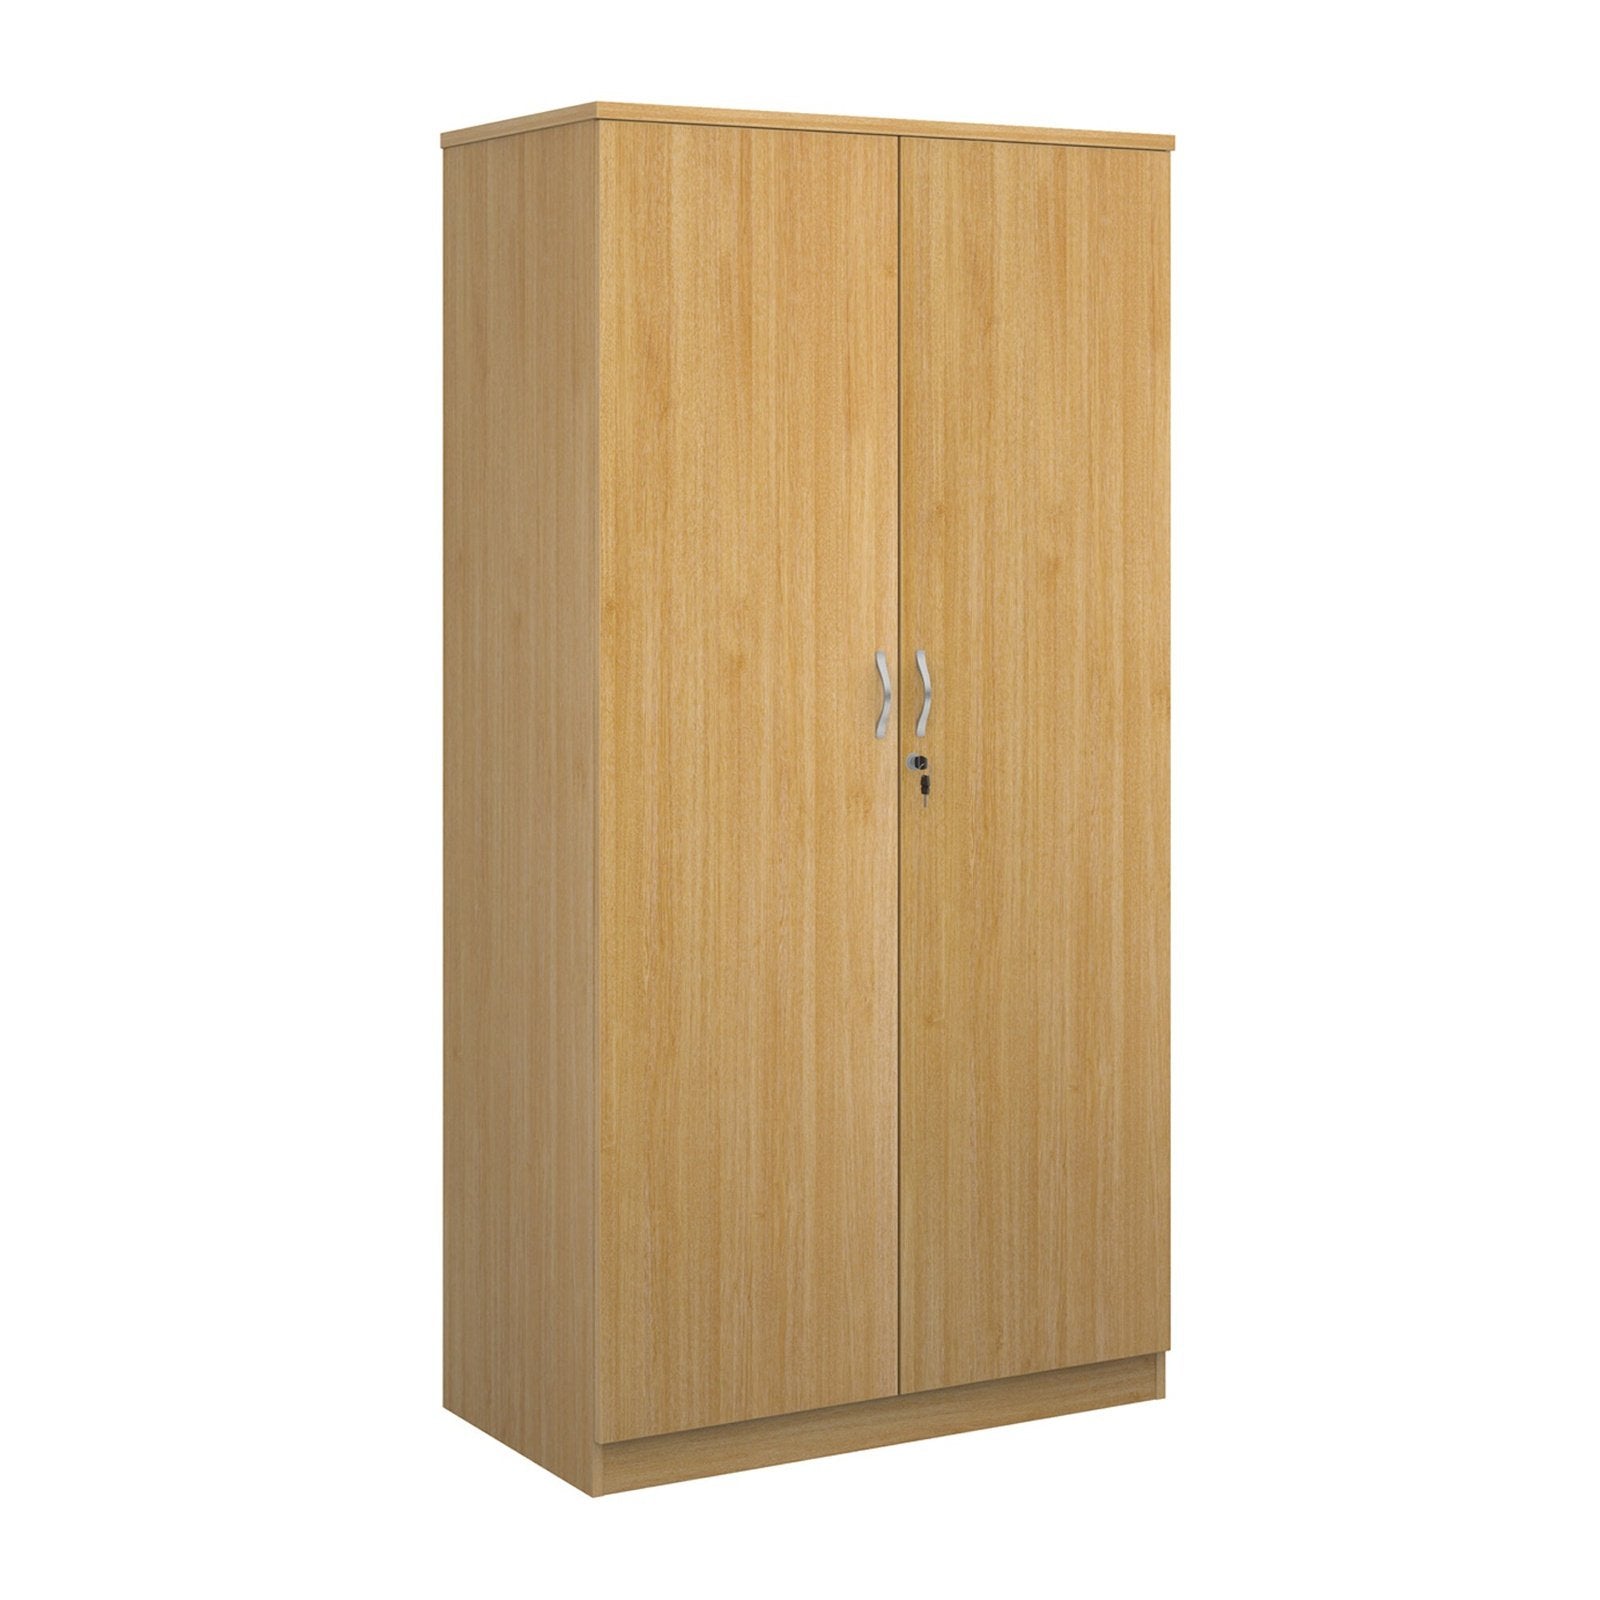 Deluxe double door cupboard - Office Products Online